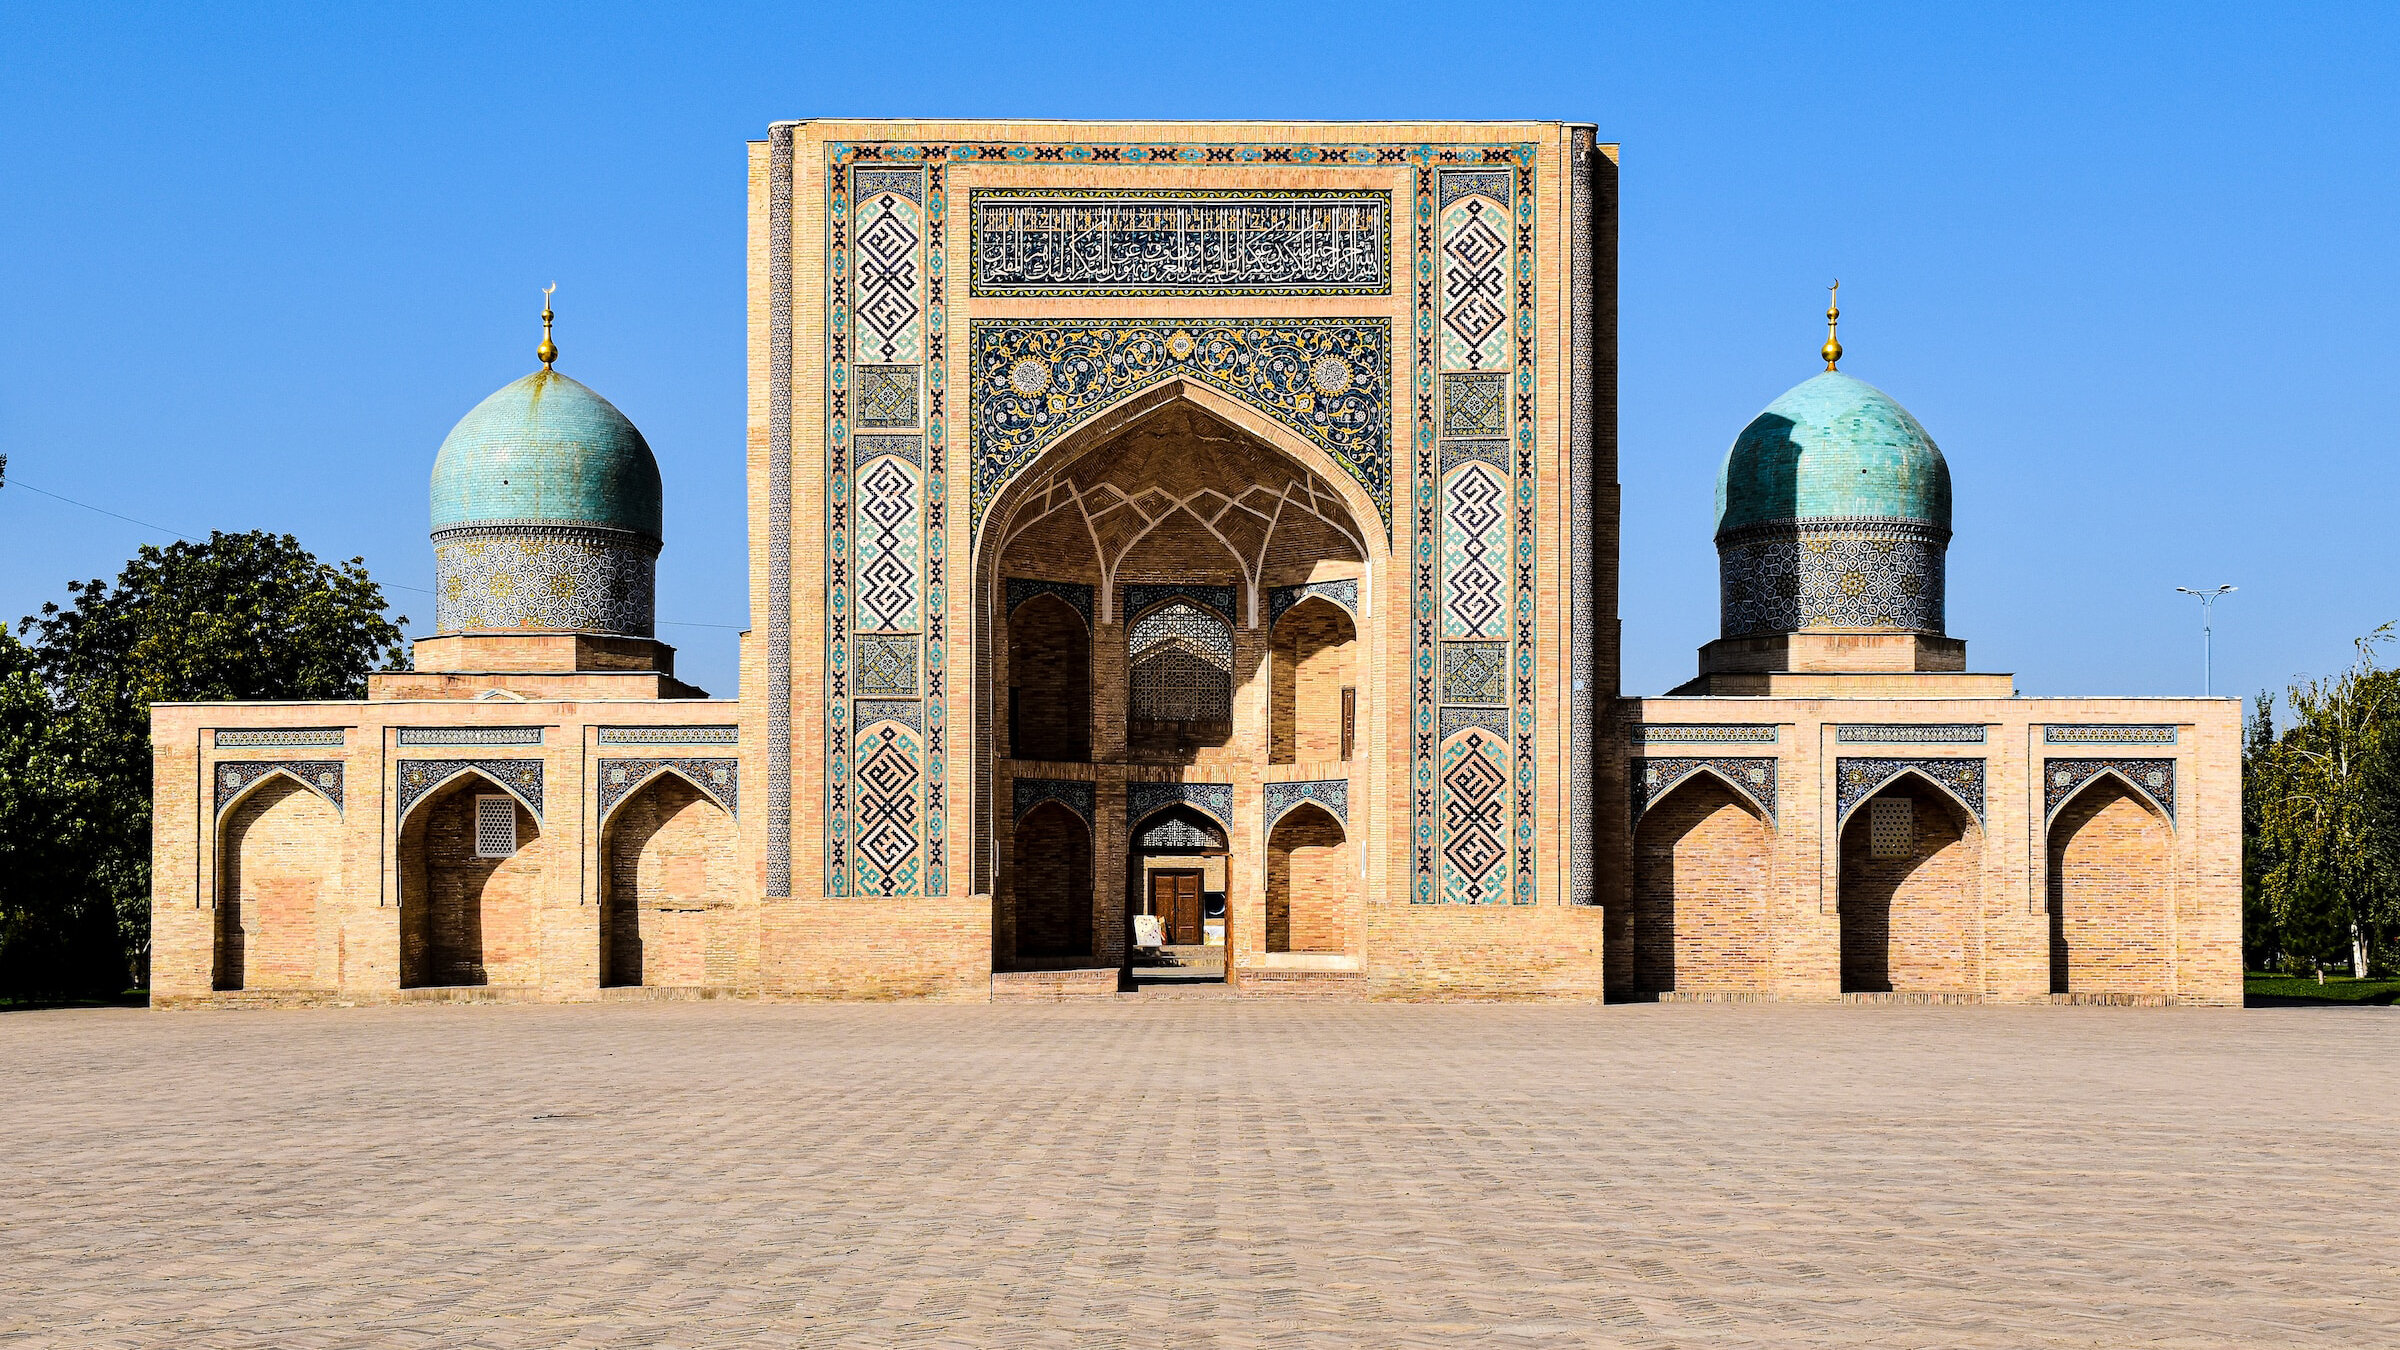 Килограмм плова за 200 рублей, неожиданная зима и гостеприимство: как живётся в Ташкенте 